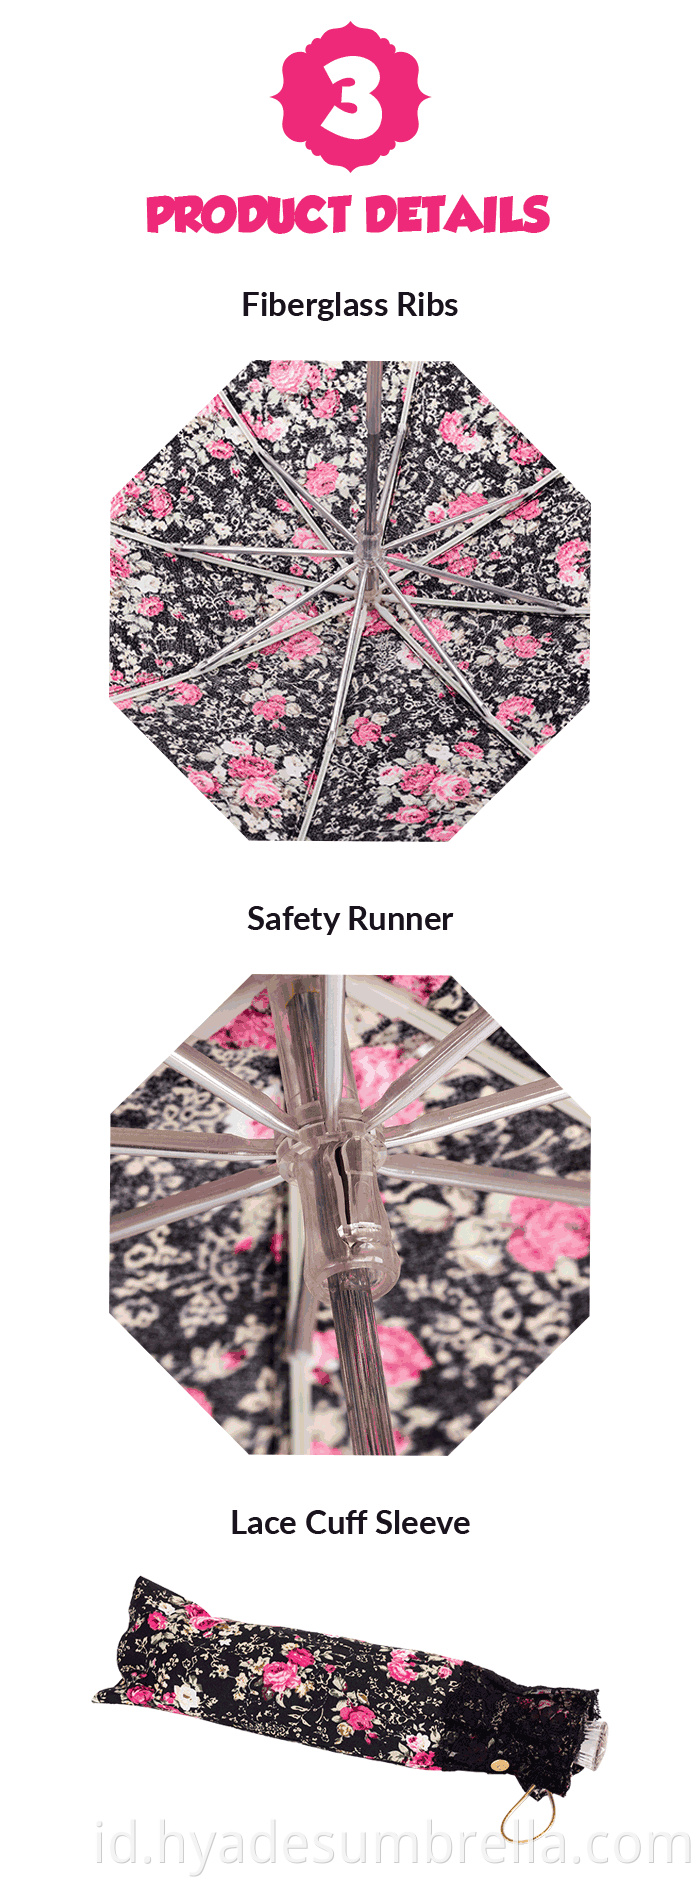 ladies compact umbrella